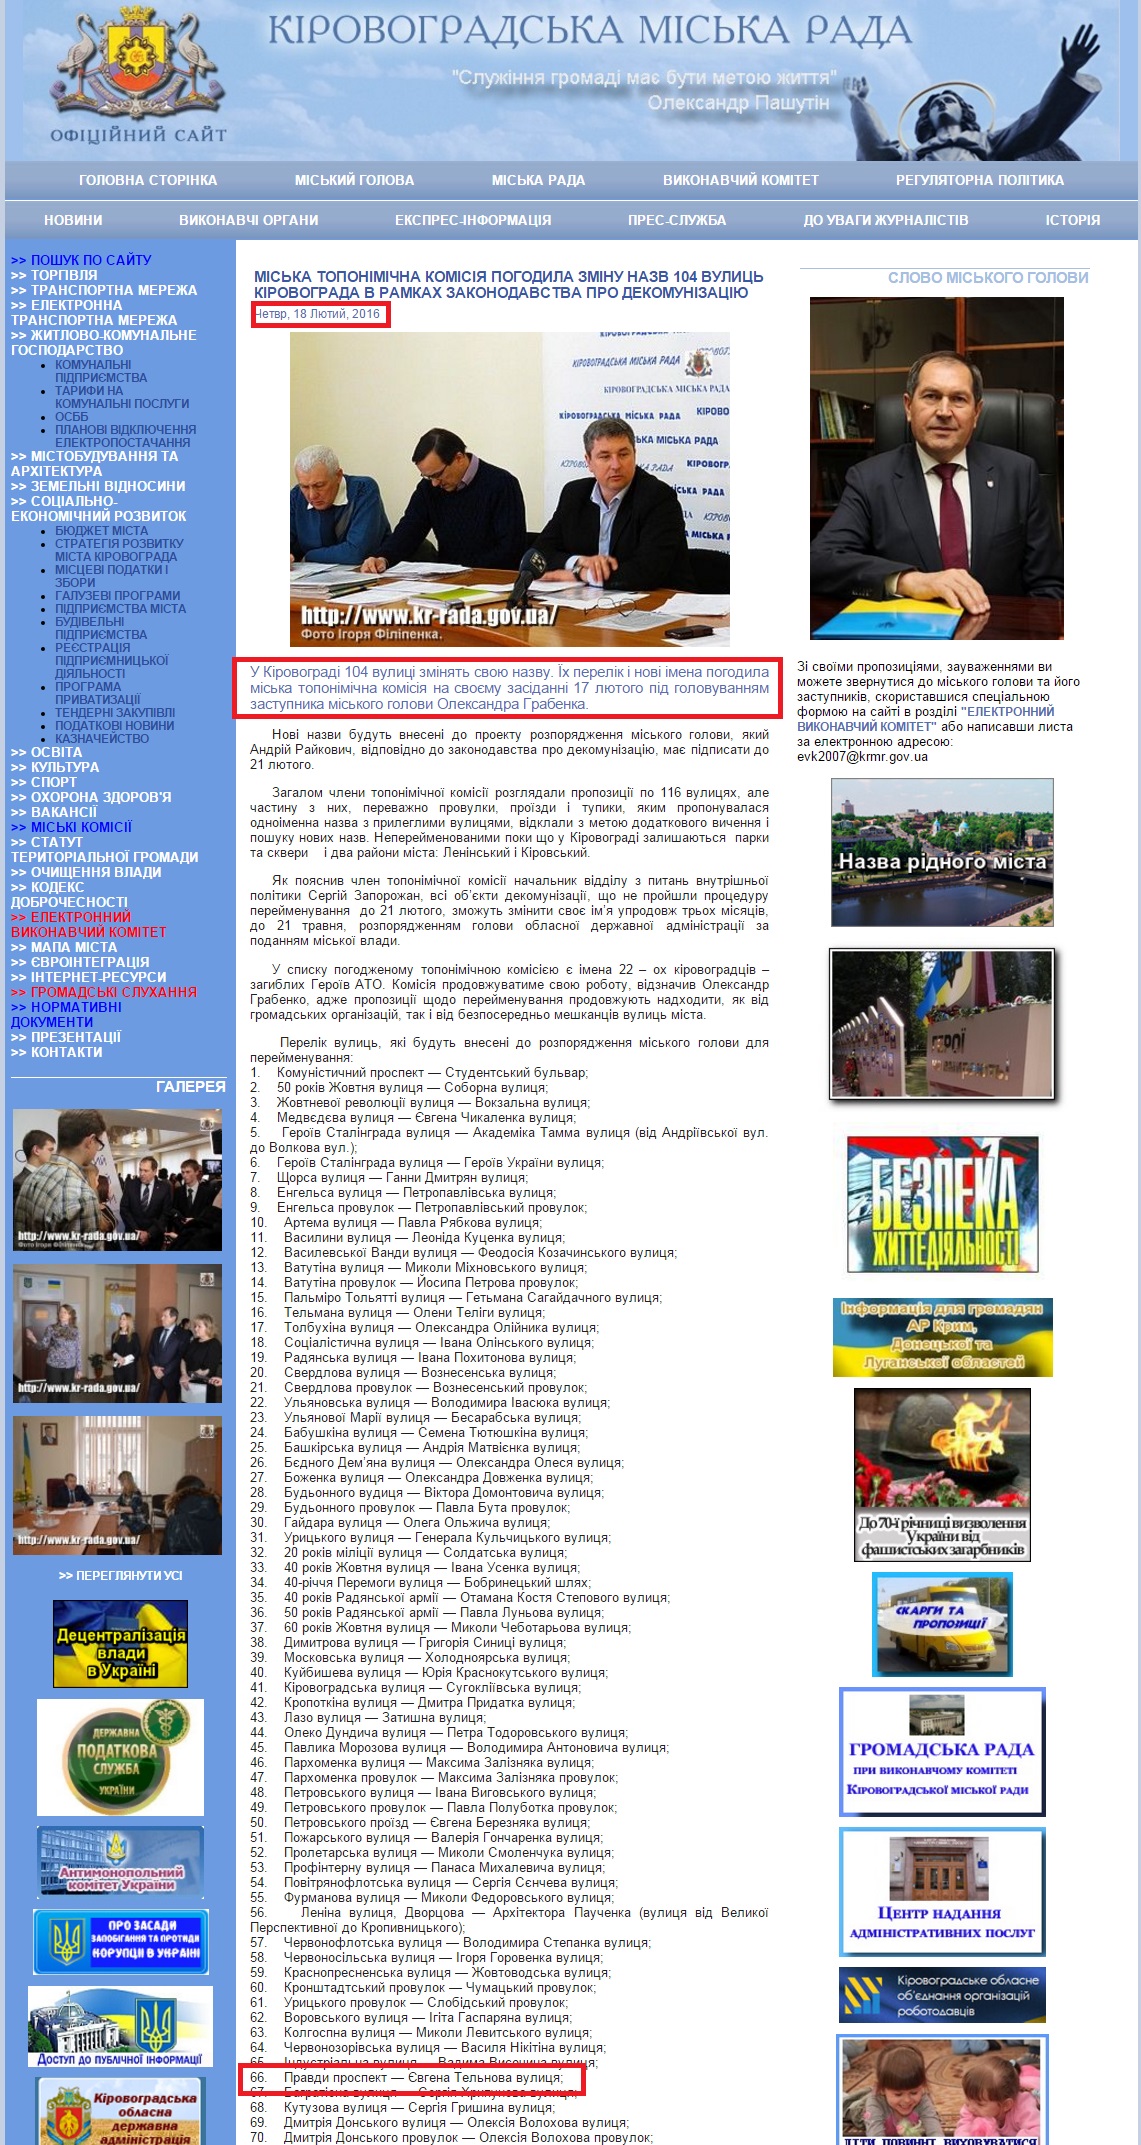 http://www.kr-rada.gov.ua/news/miska-toponimichna-18-2-16.html?page=4